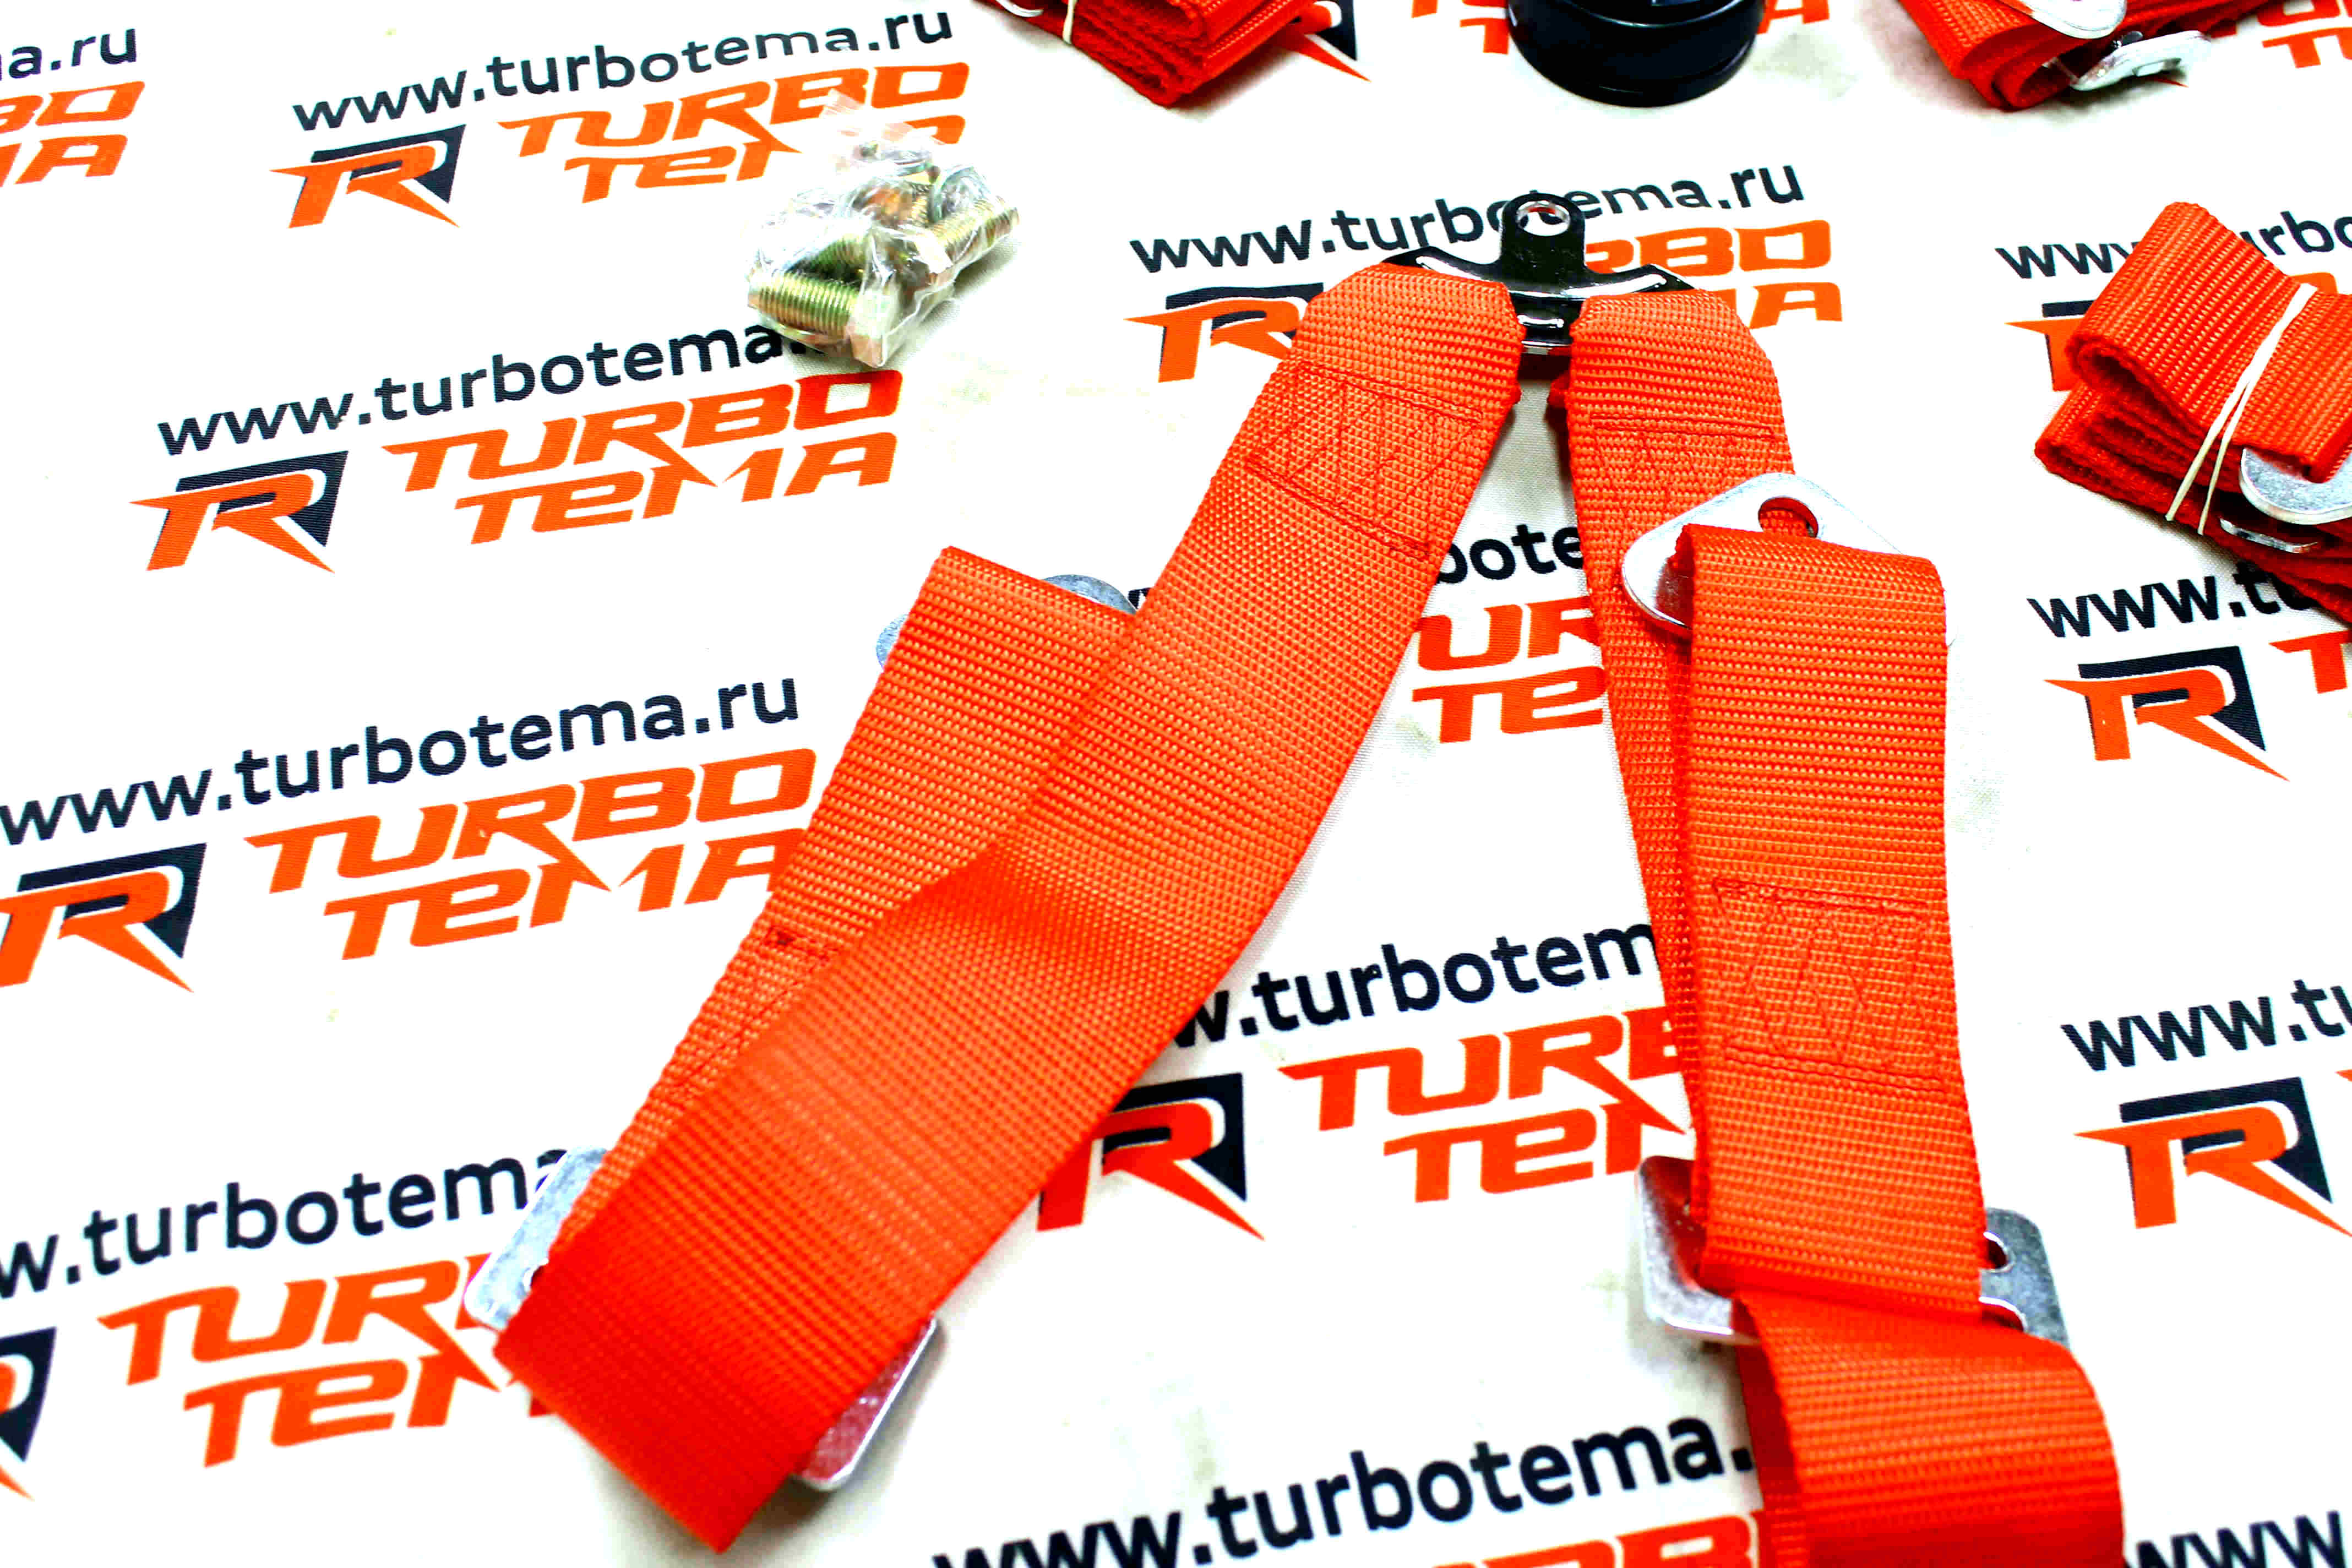 Ремни безопасности "TURBOTEMA" 6-х точечные, 2" ширина, быстросъемные (красные) JBR4001-6. Фото �6